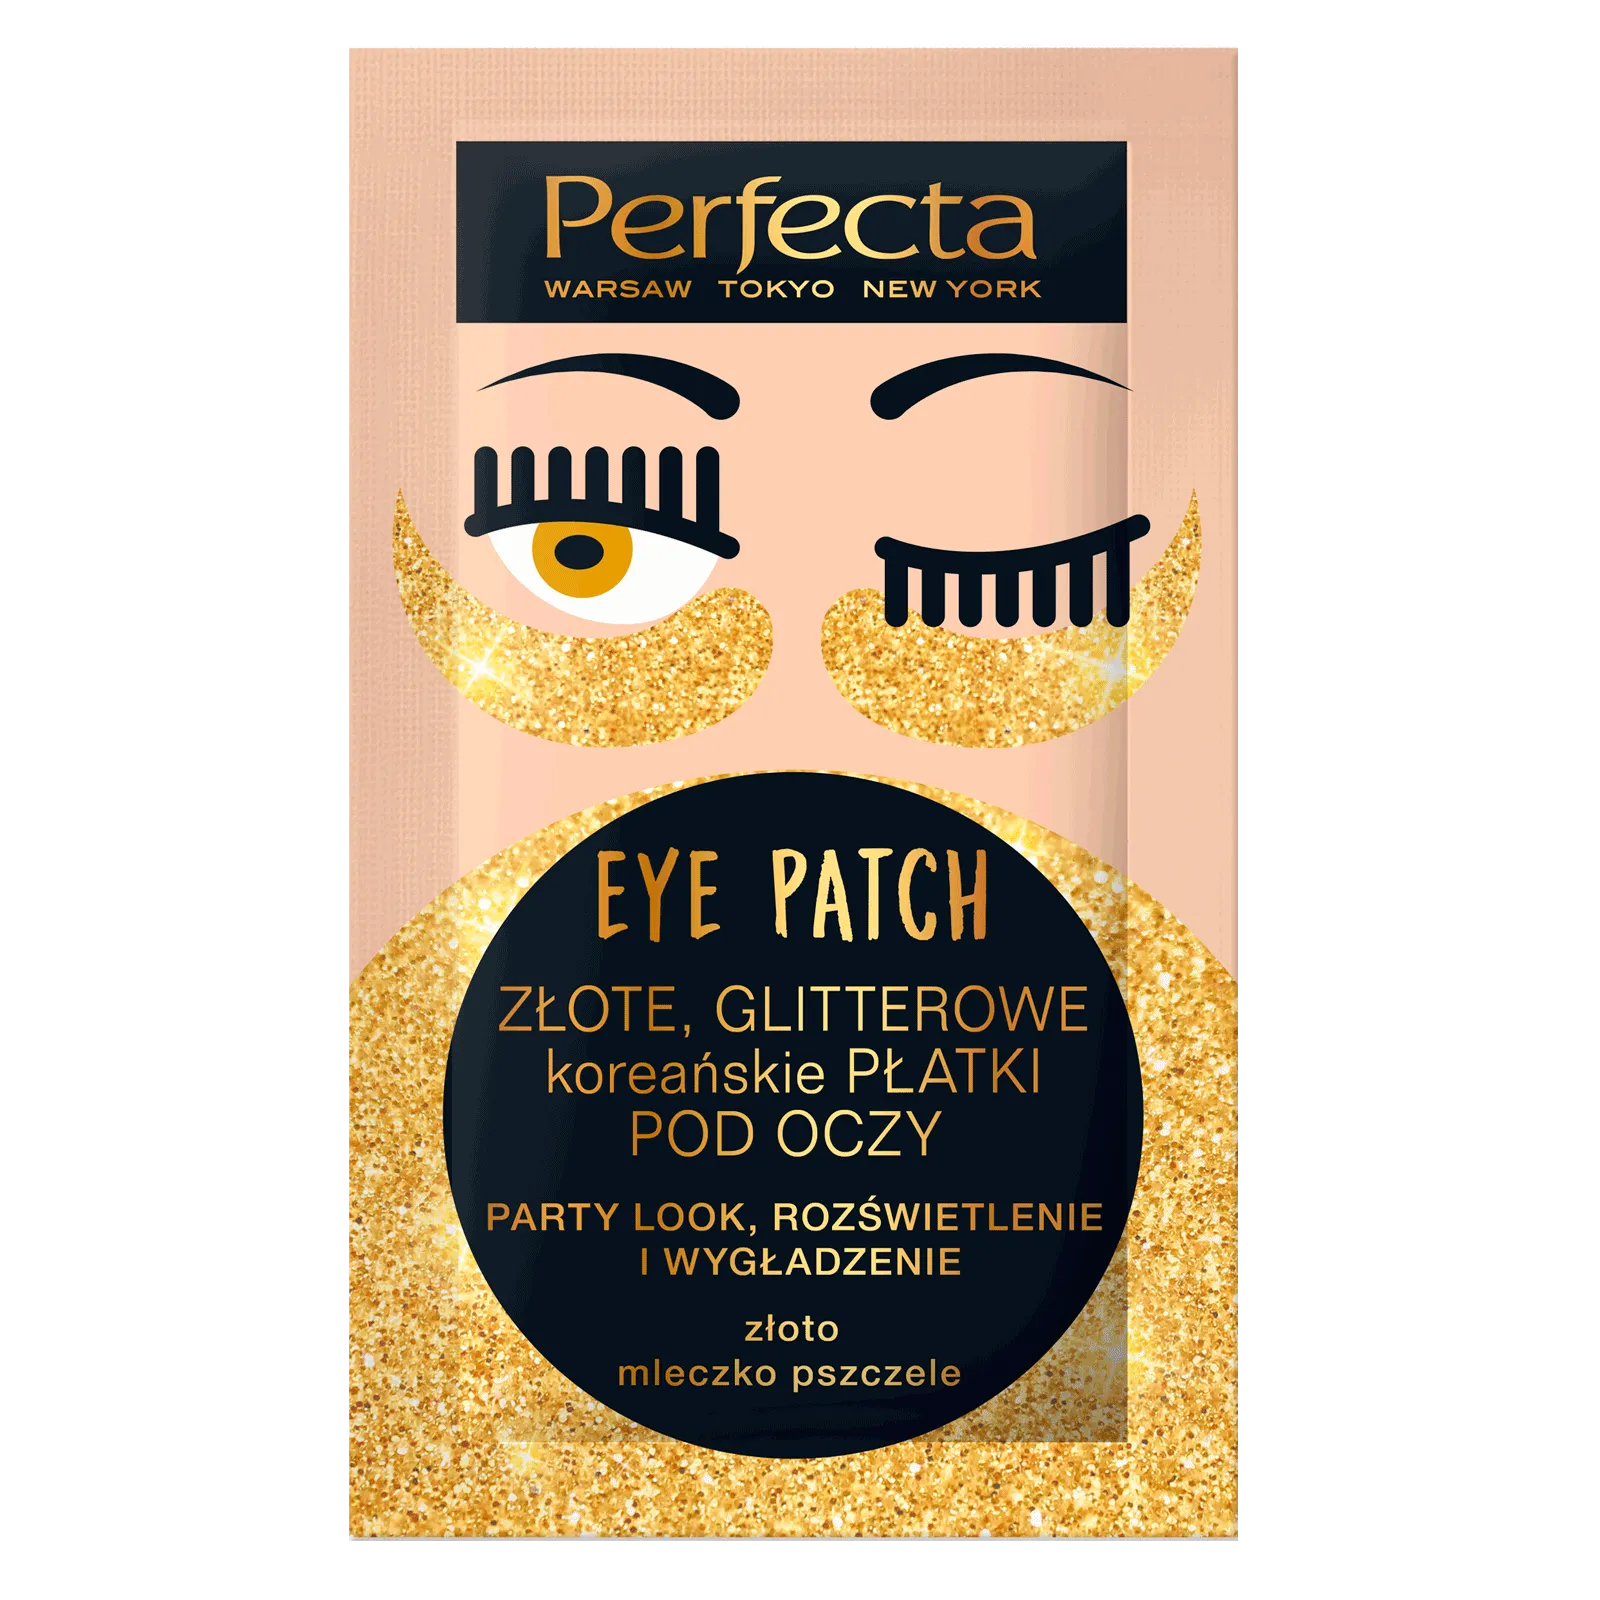 Perfecta Eye Patch złote, glitterowe koreańskie płatki pod oczy, 1 szt.